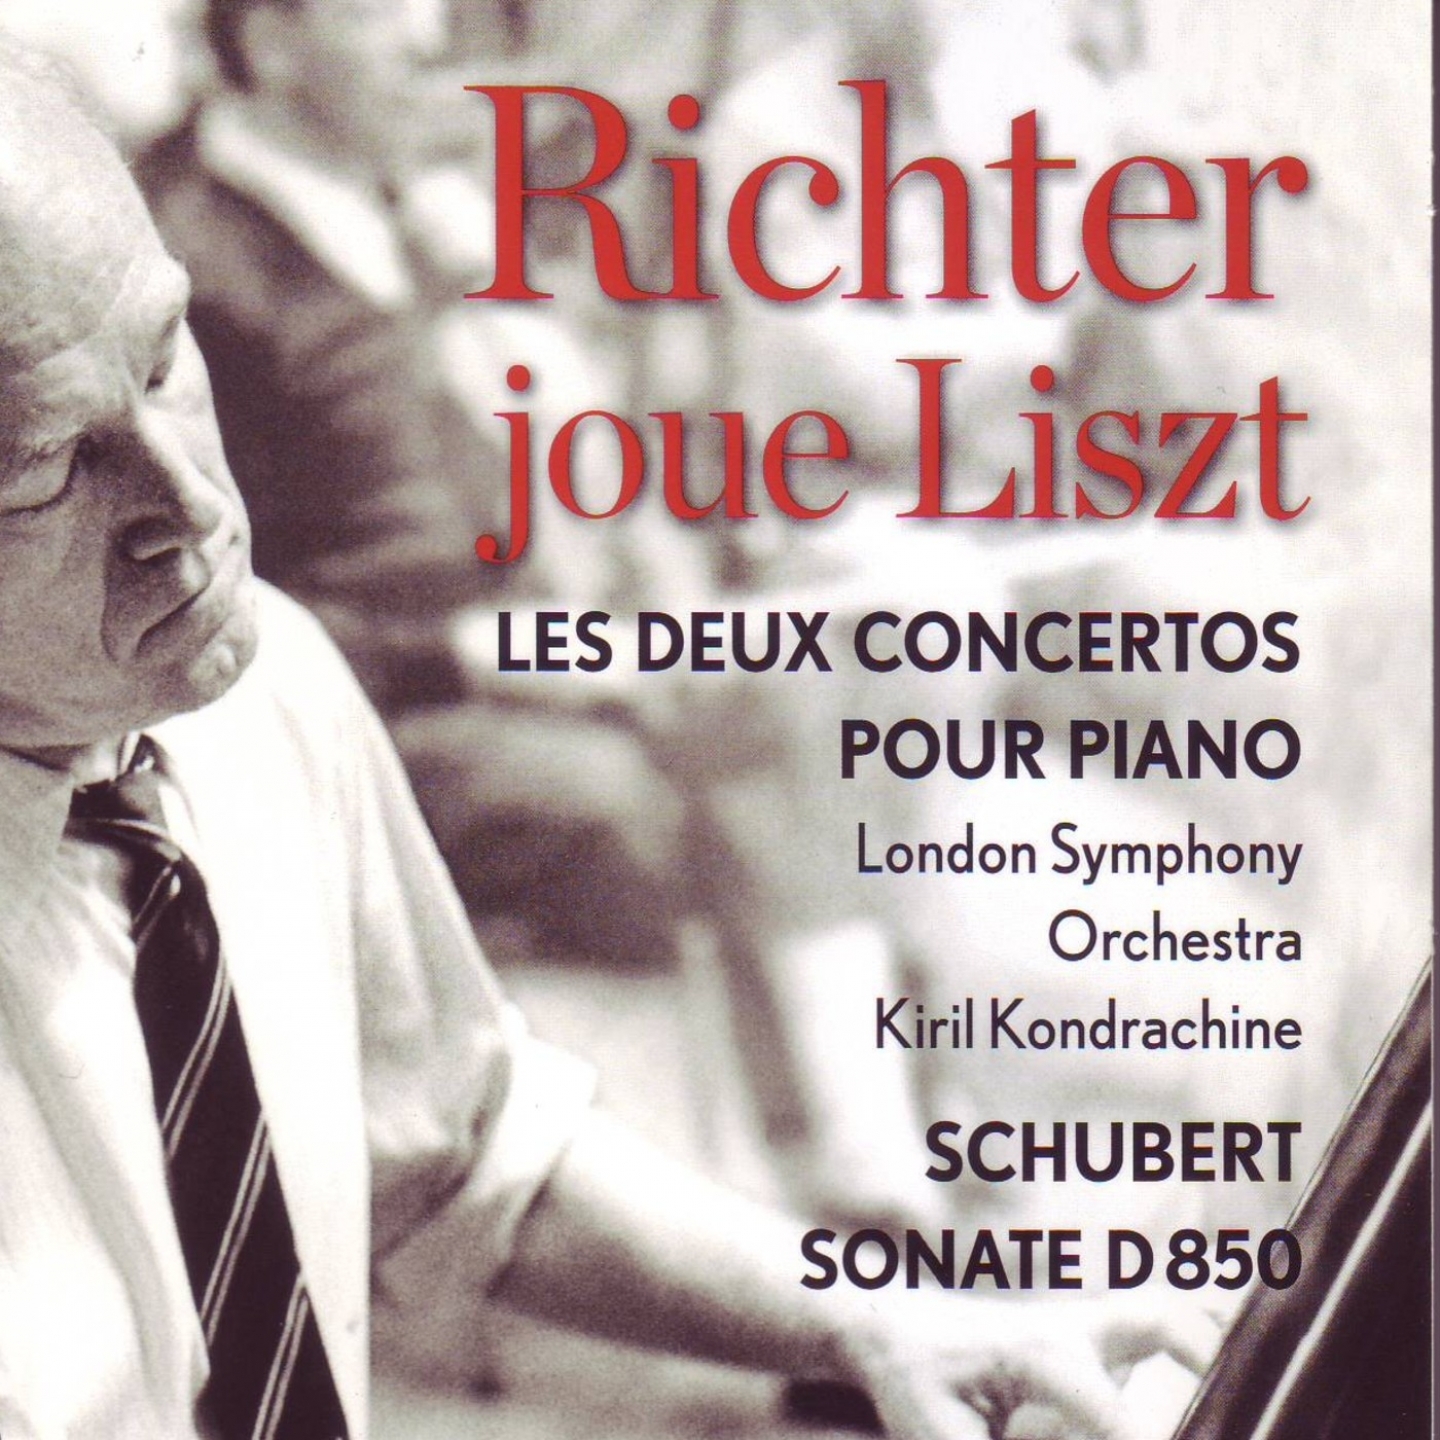 Liszt : Concerto pour piano Nos. 1 & 2 - Schubert : Sonate pour piano D 850